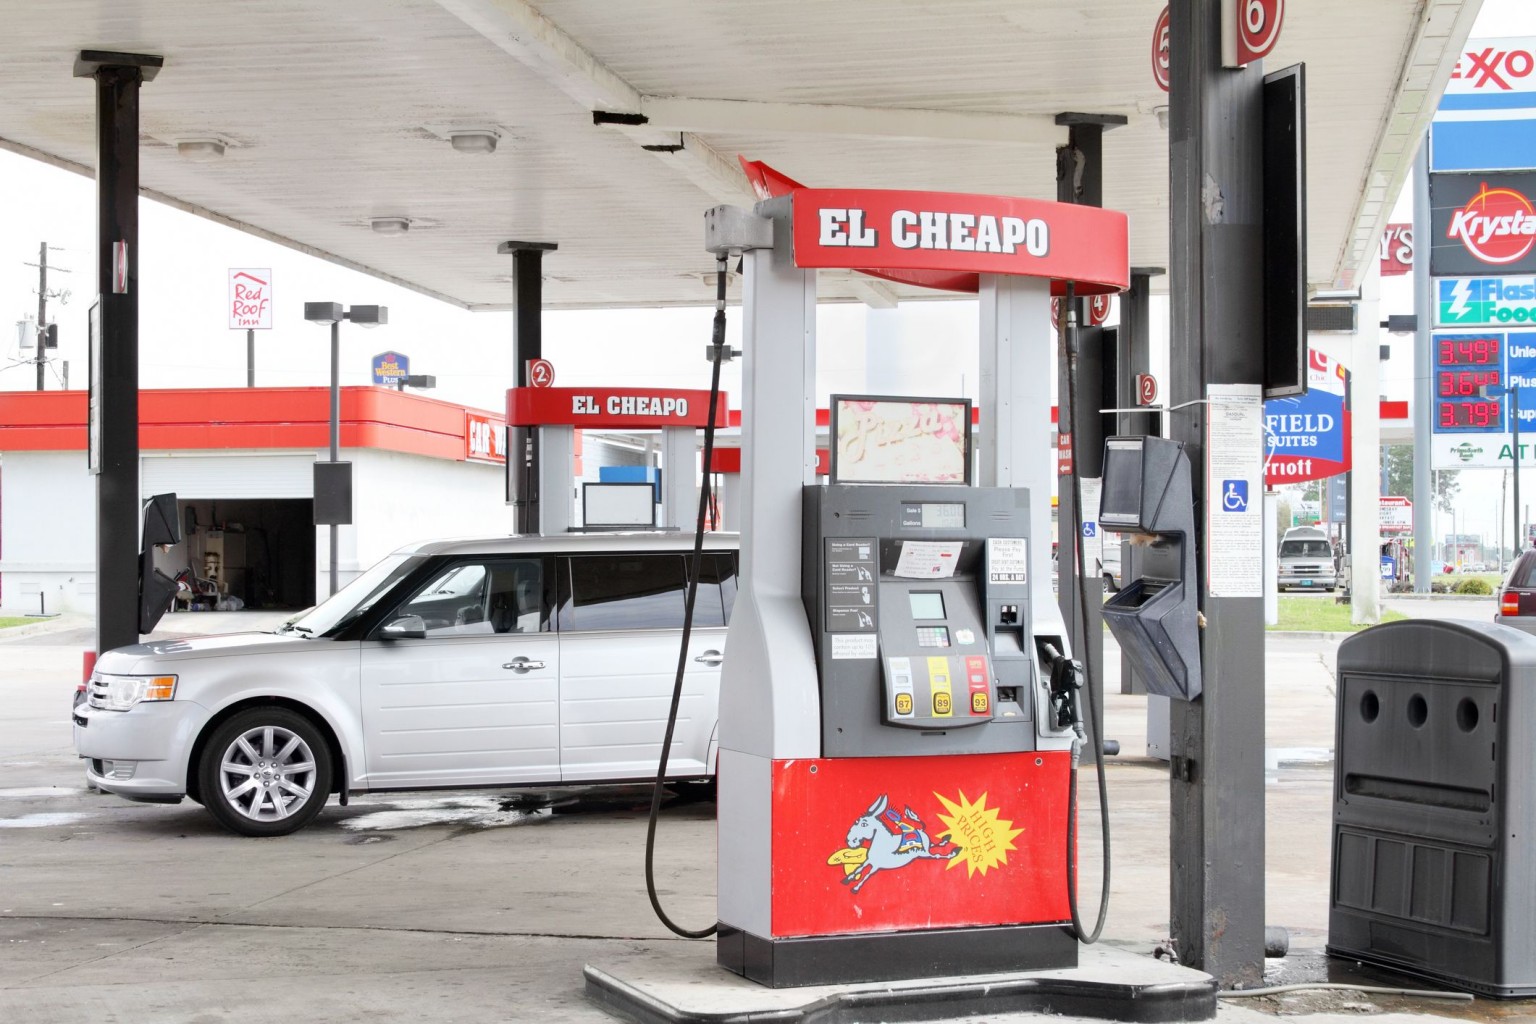 Una nueva encuesta mide la confianza del consumidor con respecto a las recompensas en la gasolina 